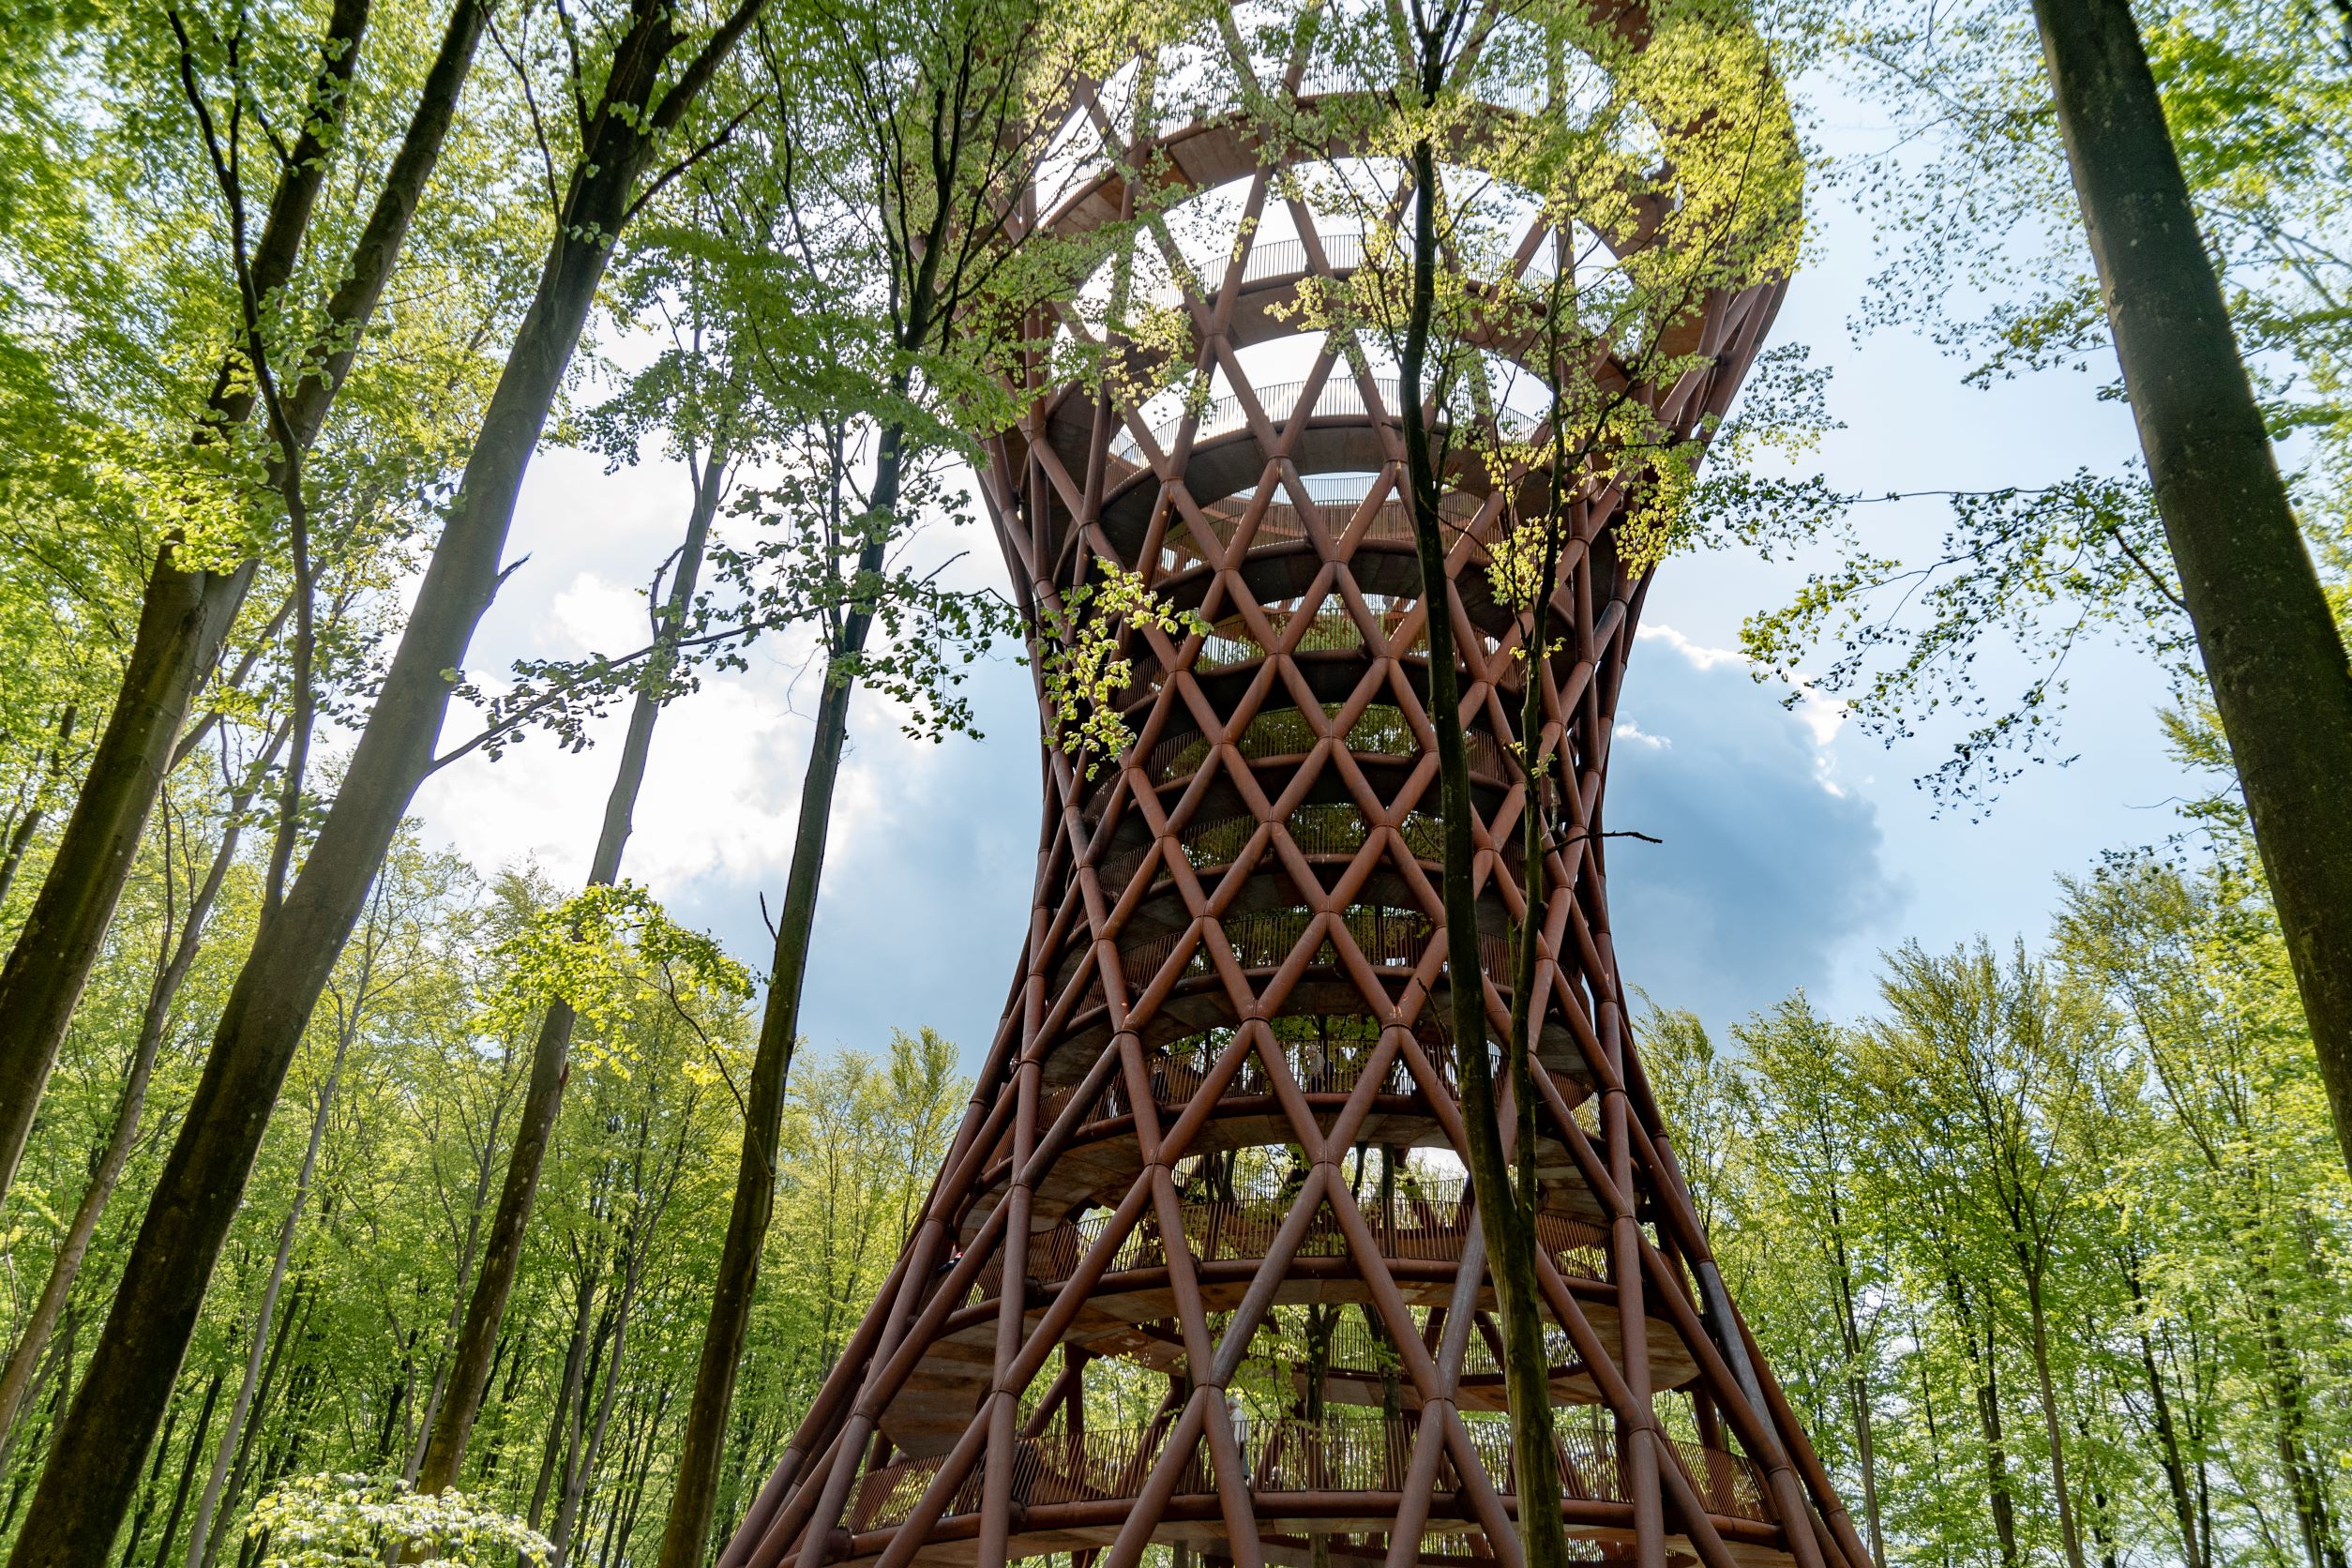 高 45 公尺的 Treetop Experience 森林塔，座落在一大片原始森林中。